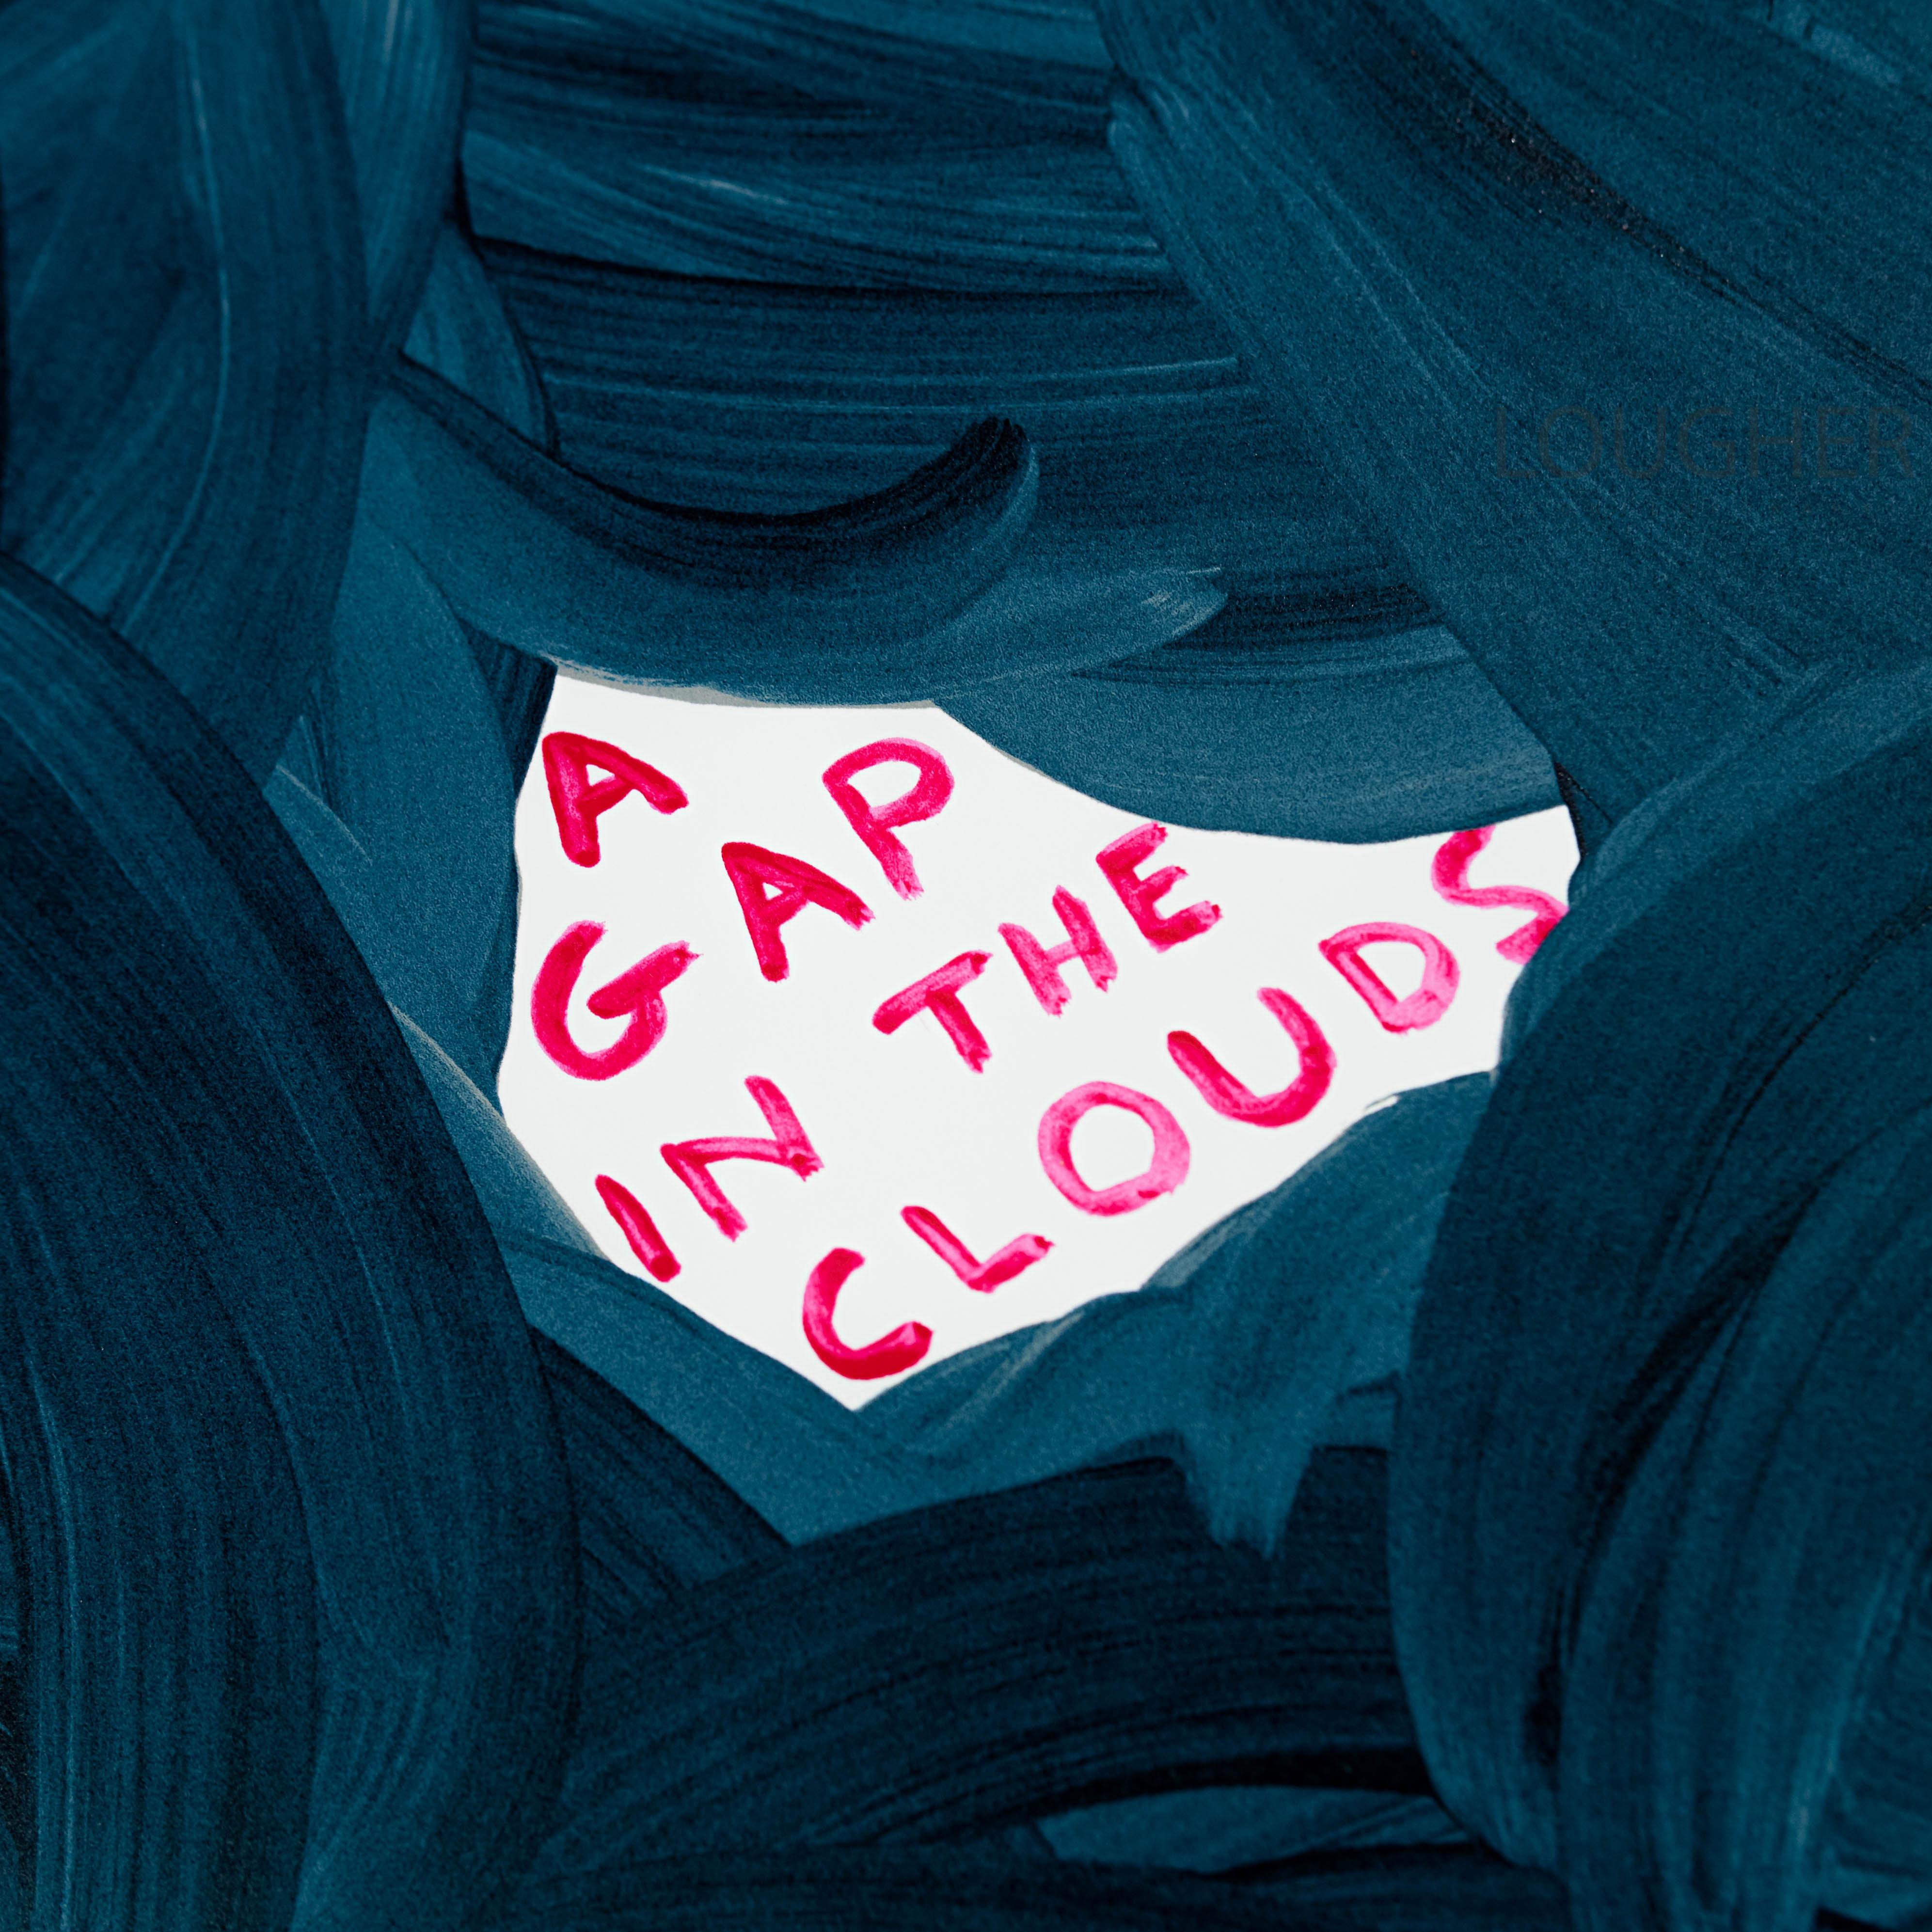 A Gap in the Clouds 2